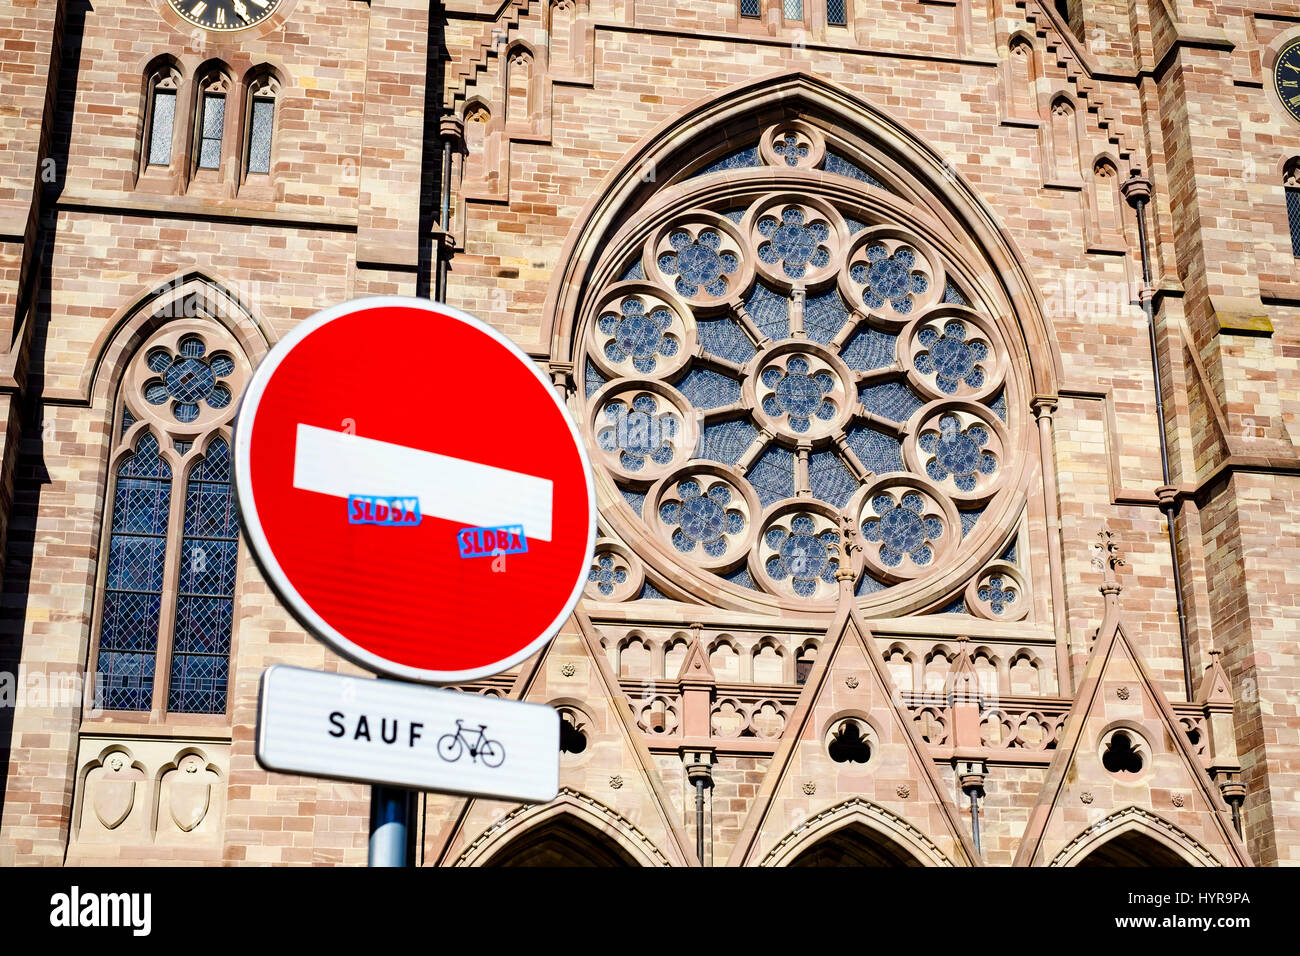 Kein Eintrag Zeichen mit Ausnahme von Radfahrern und evangelische Kirche St. Paul Rosenfenster, Straßburg, Elsass, Frankreich Stockfoto